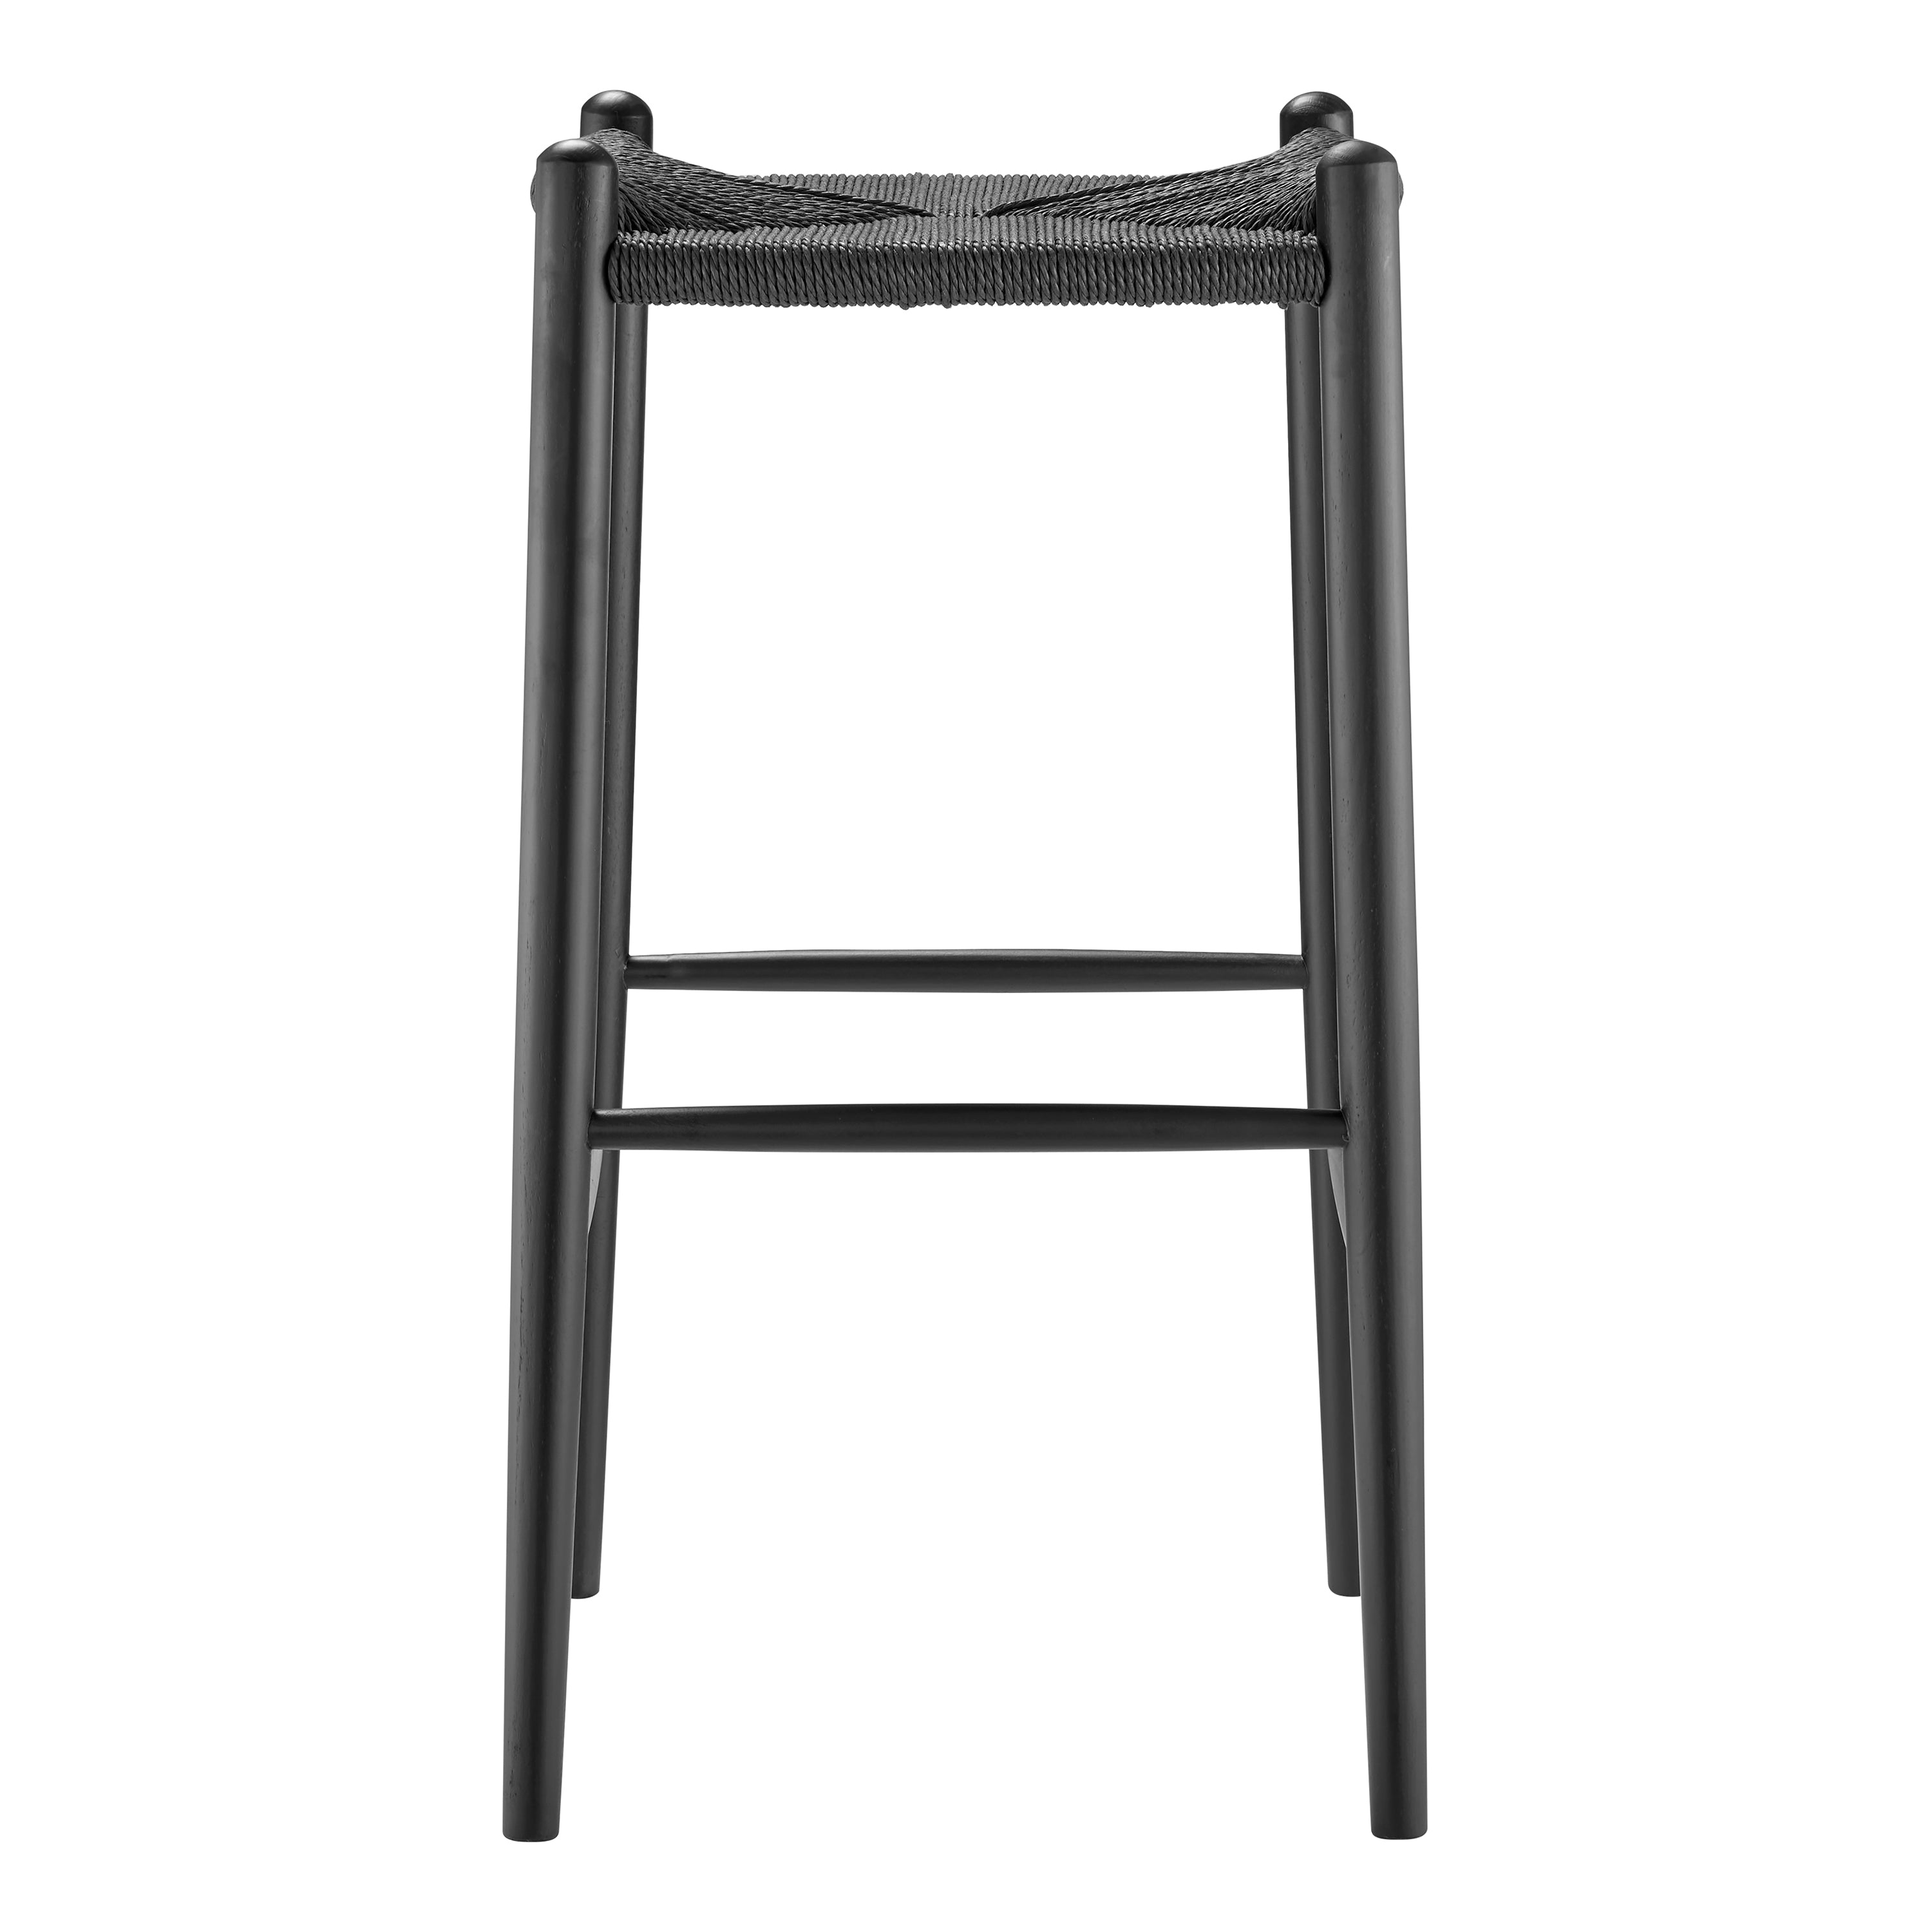 Euro Style Barstools - Evelina Bar Stool without Backrest with Black Frame and Rush Seat - Set of 1